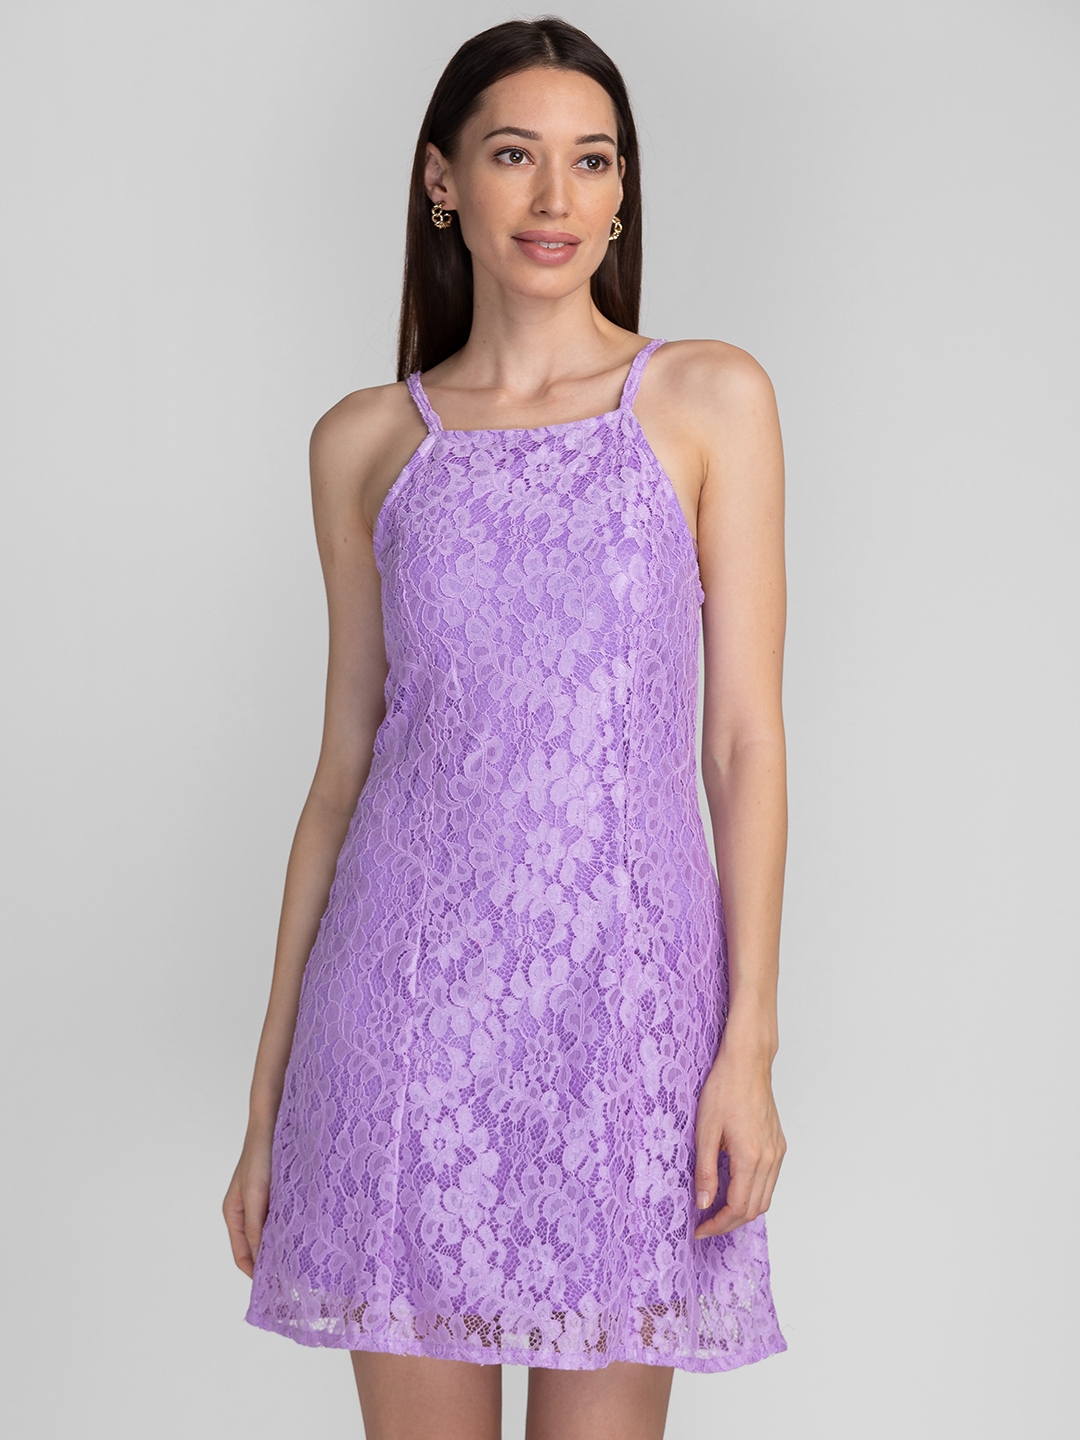 Globus Lavender Self Design A-Line Lace Dress